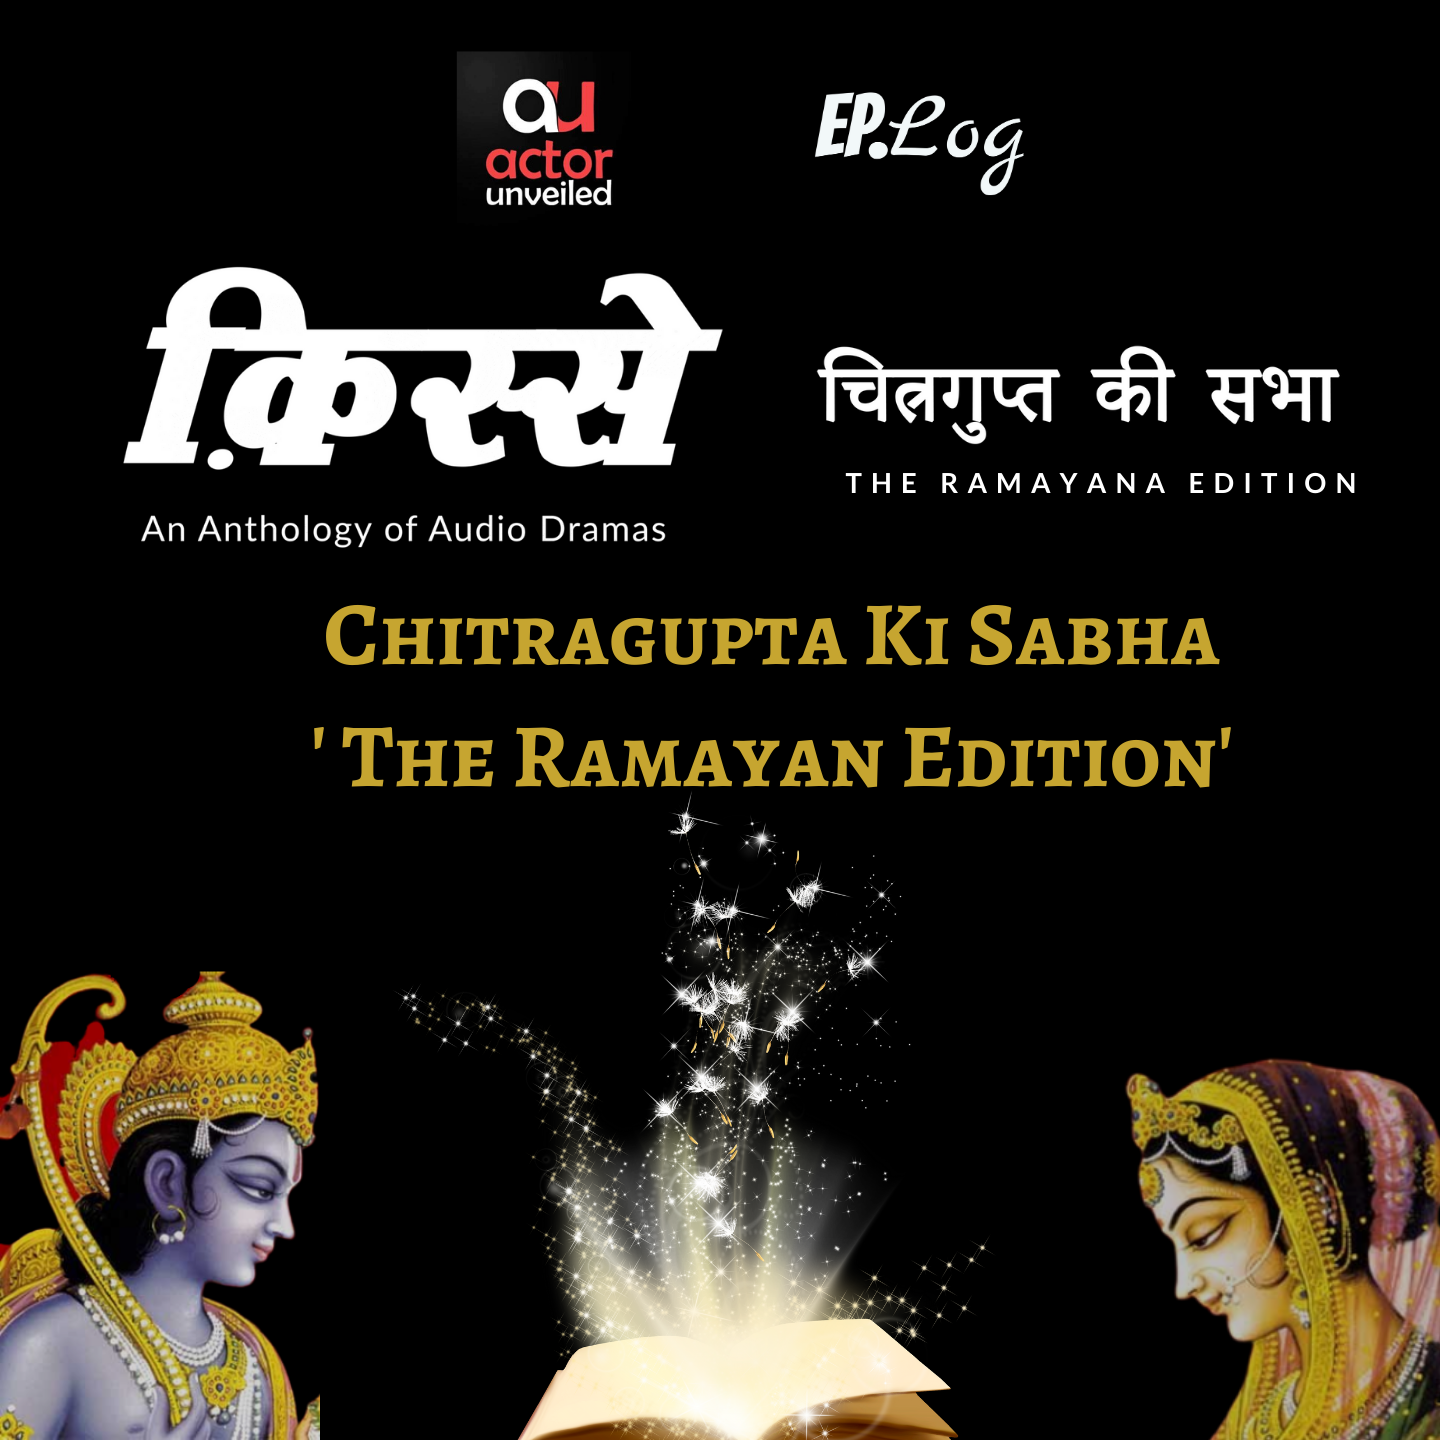 Trailer: Chitragupta Ki Sabha